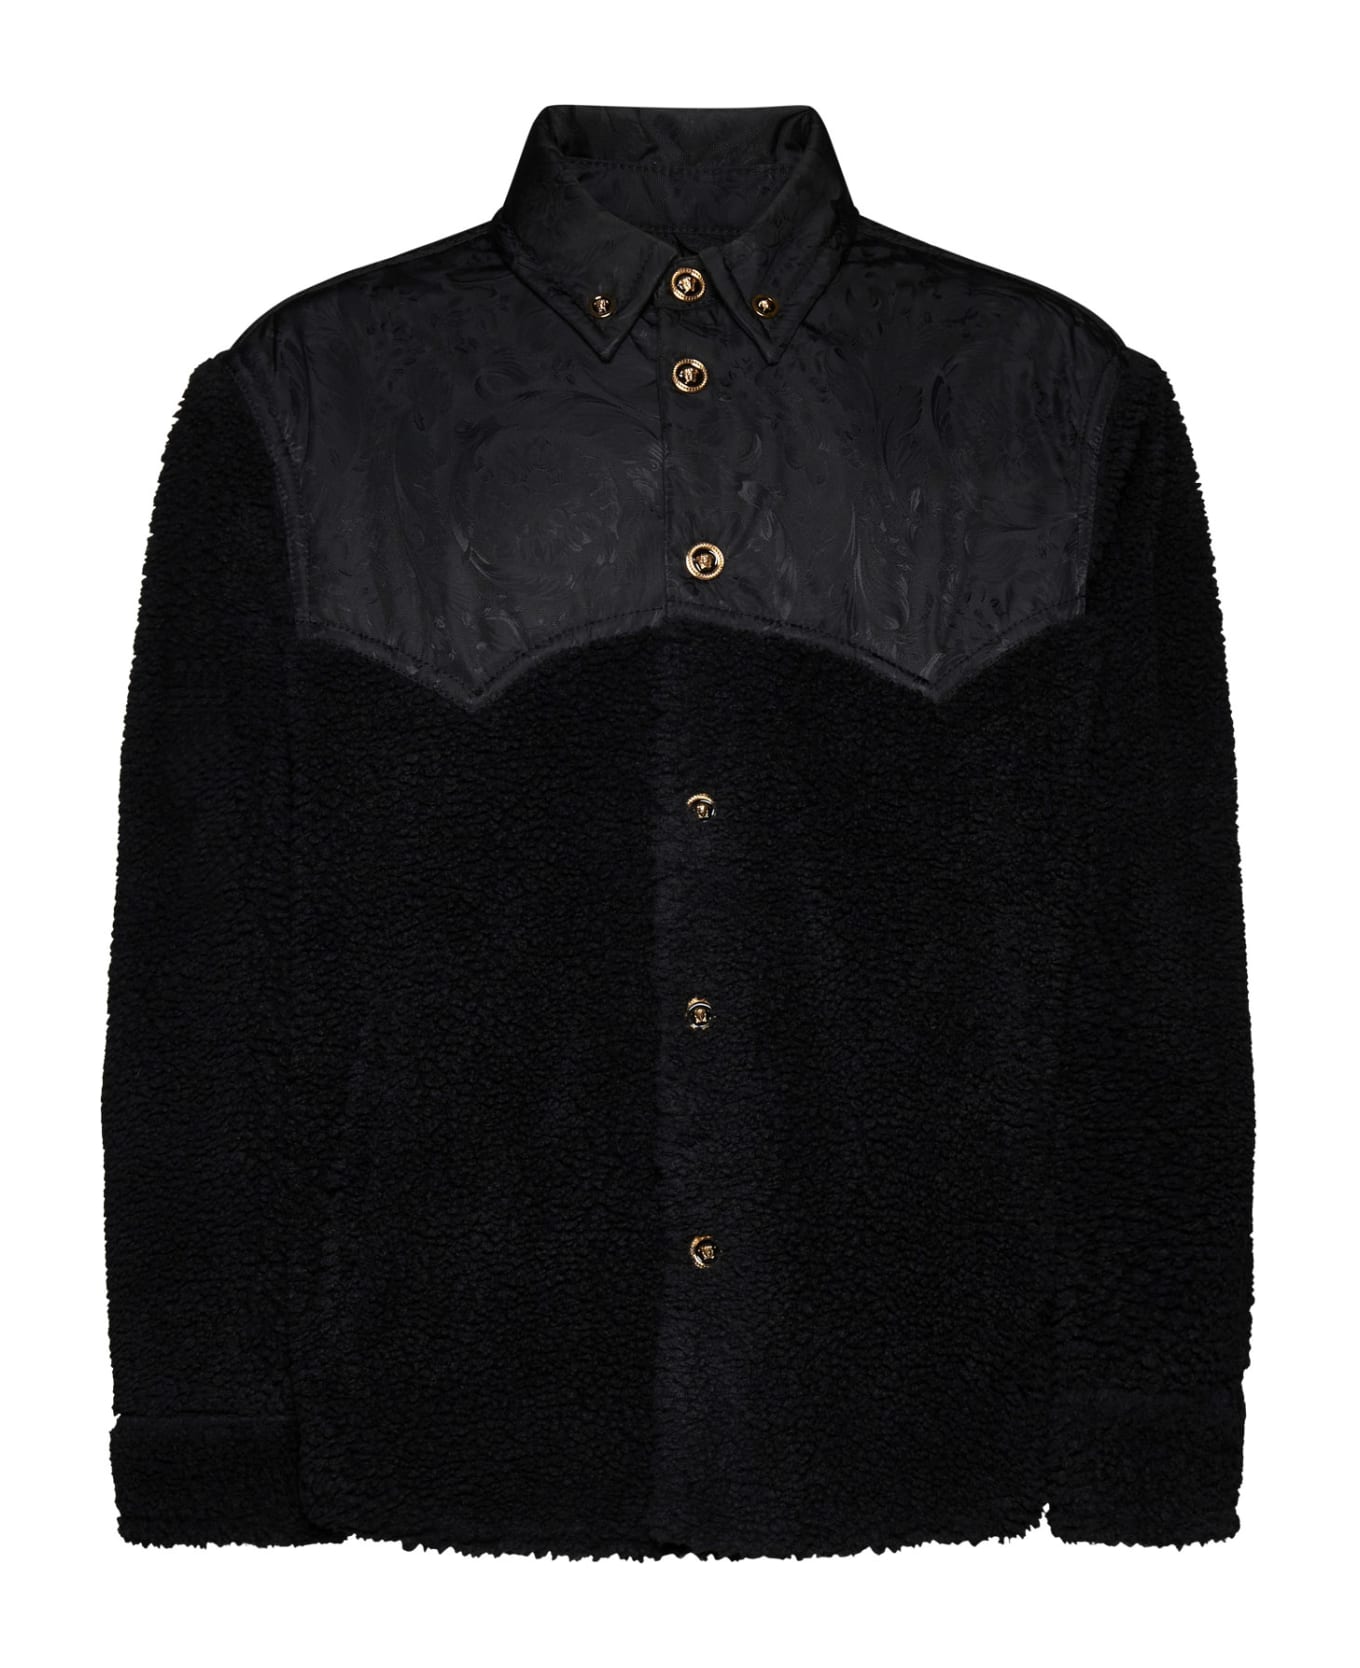 Versace Black Fleece Jacket - Black ジャケット